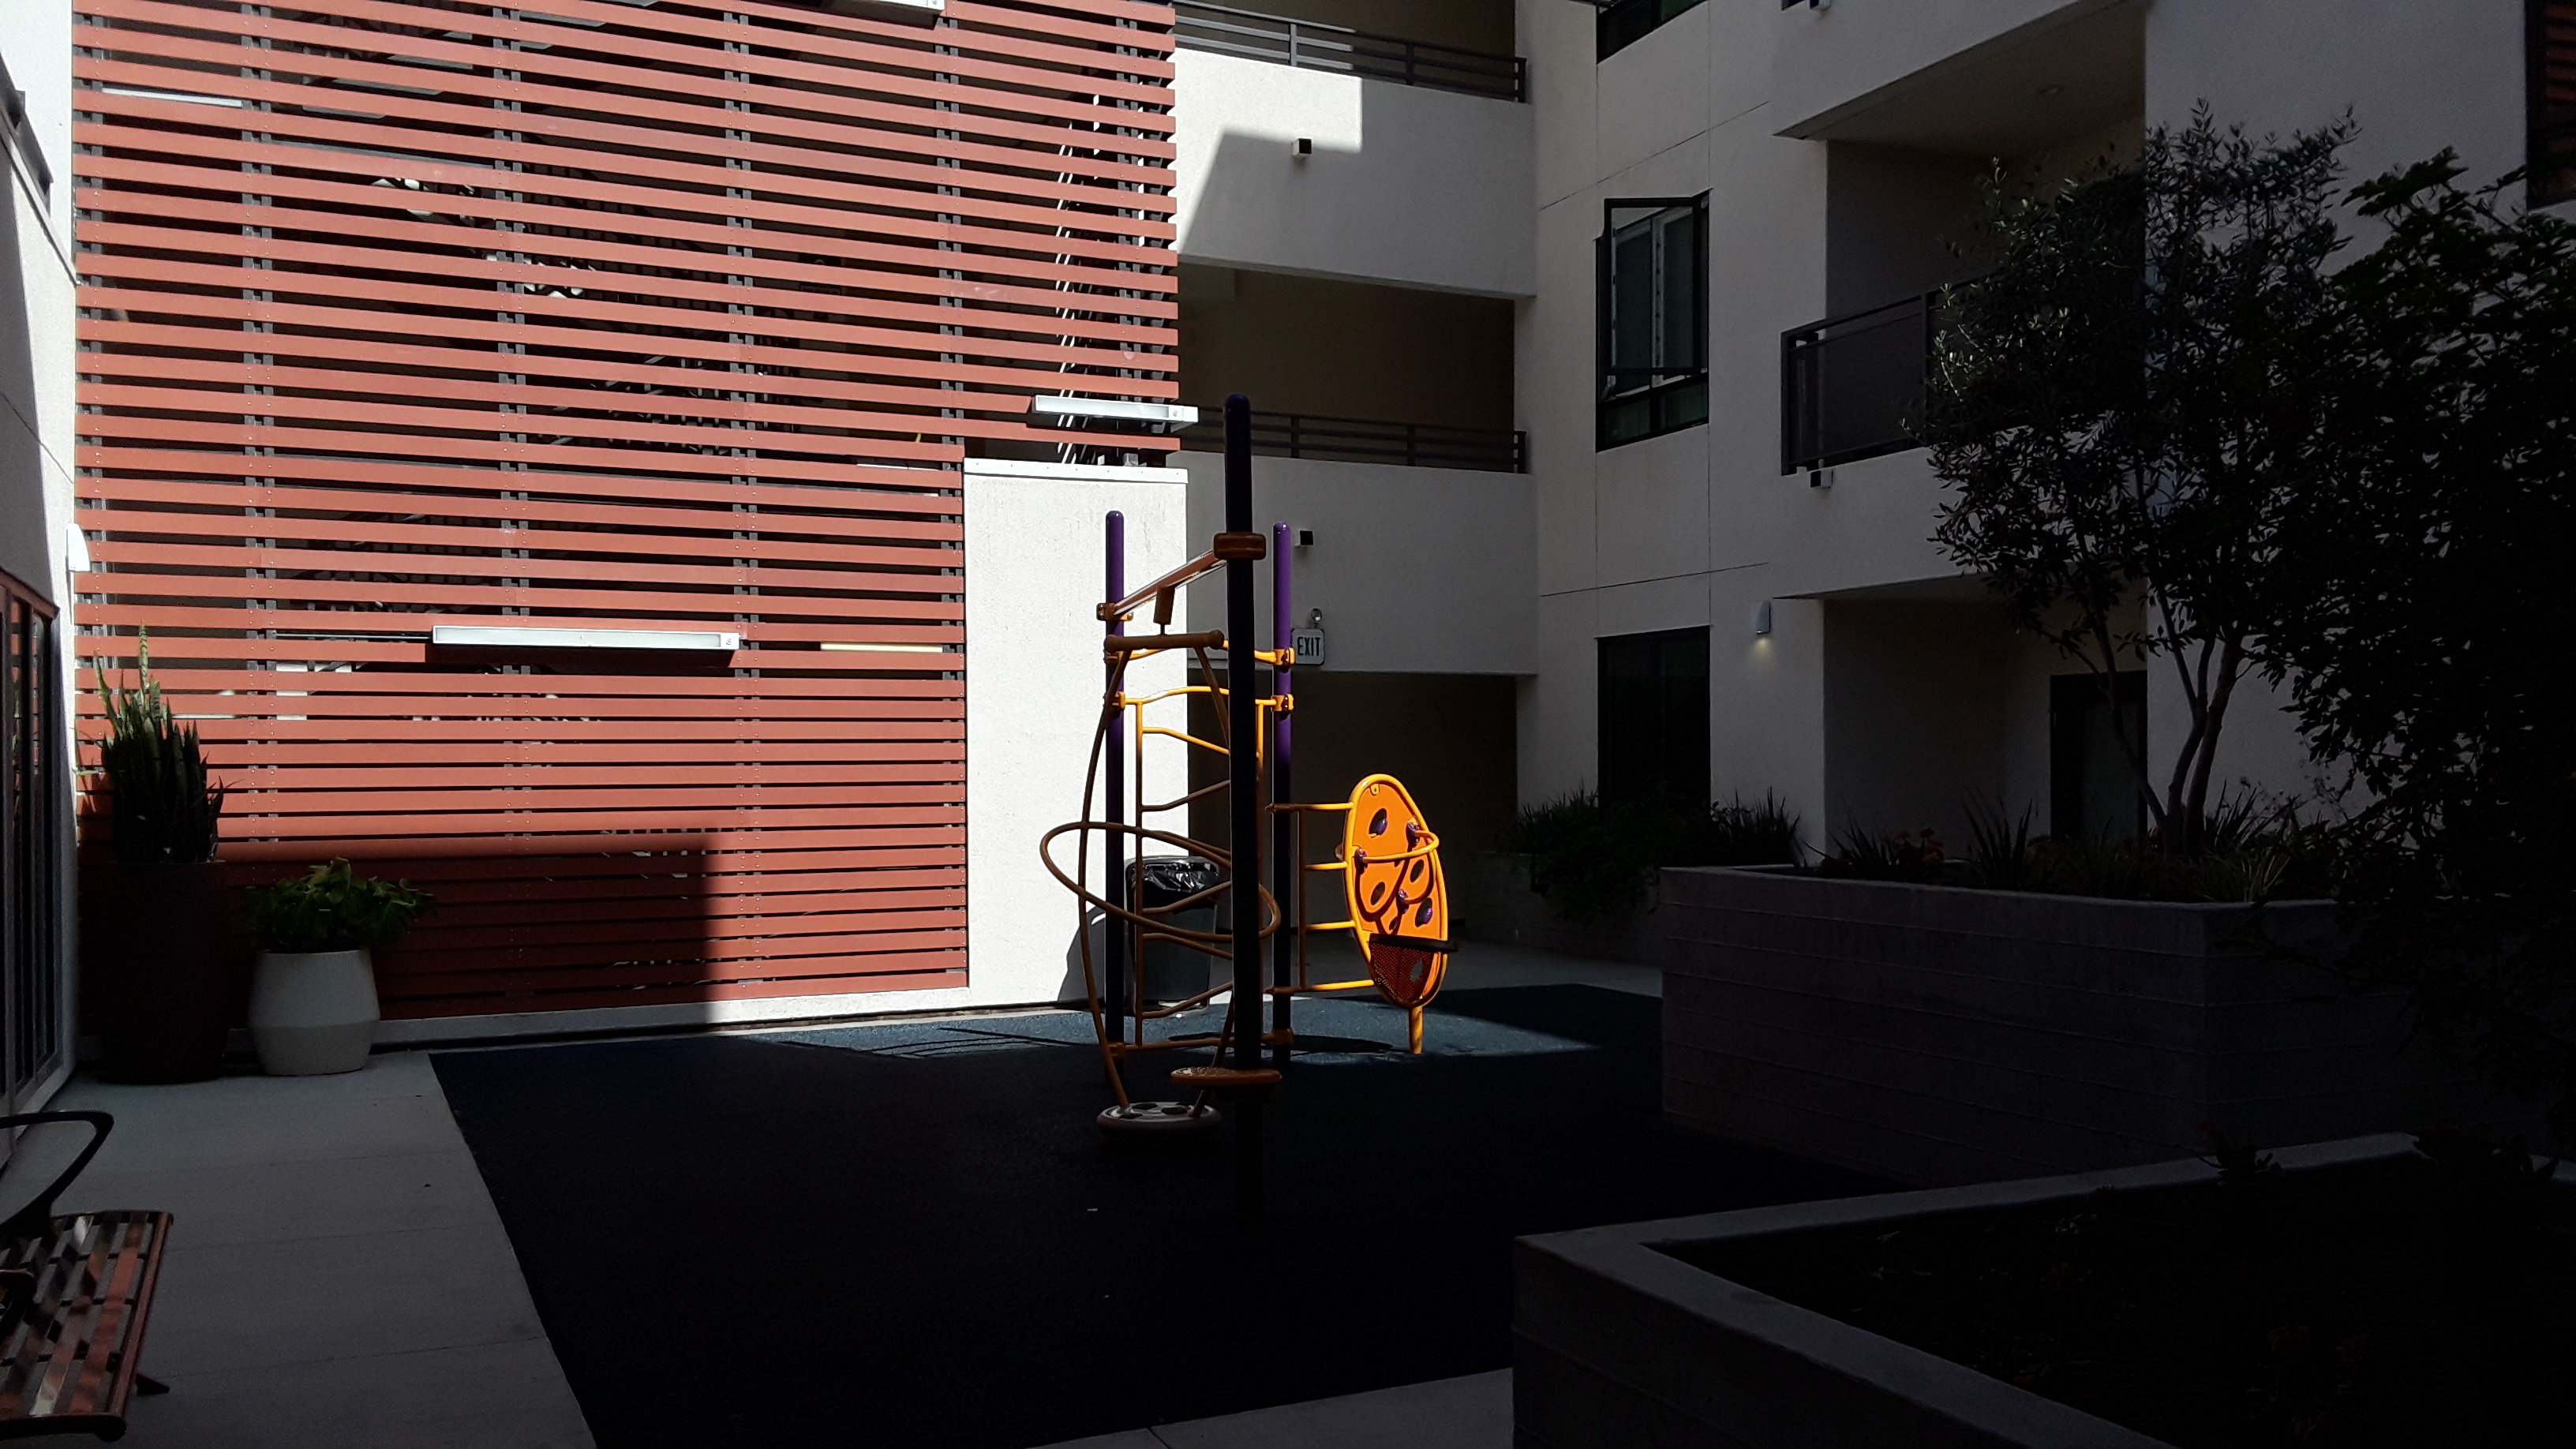 Nice playground, yellow, orange and purple climbing equipment, plants and balconies around it.